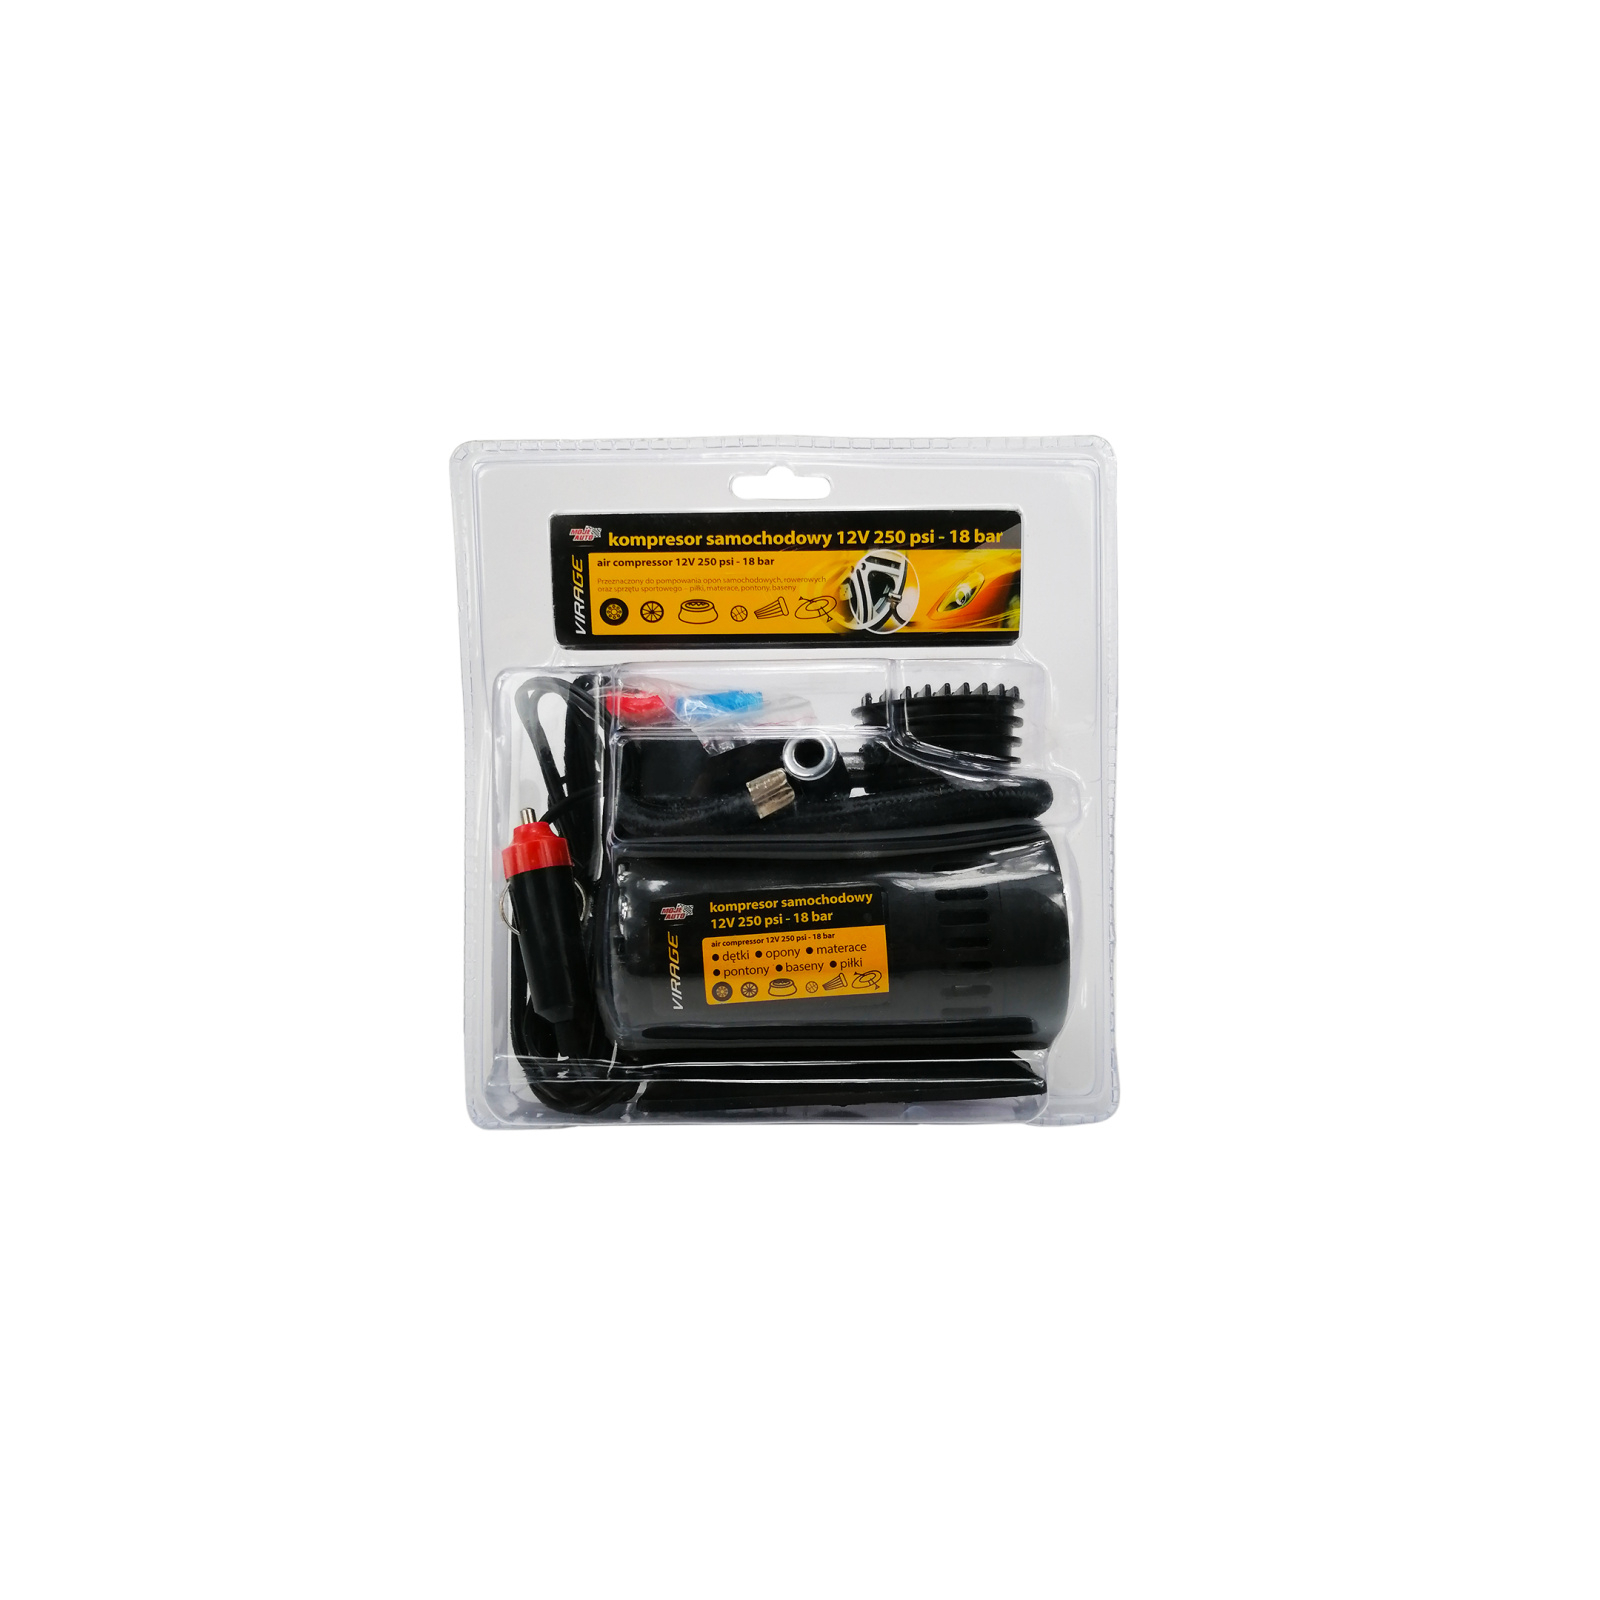 Автомобильный компрессор VIRAGE 12V 250 Psi 18 Атм (93-015)